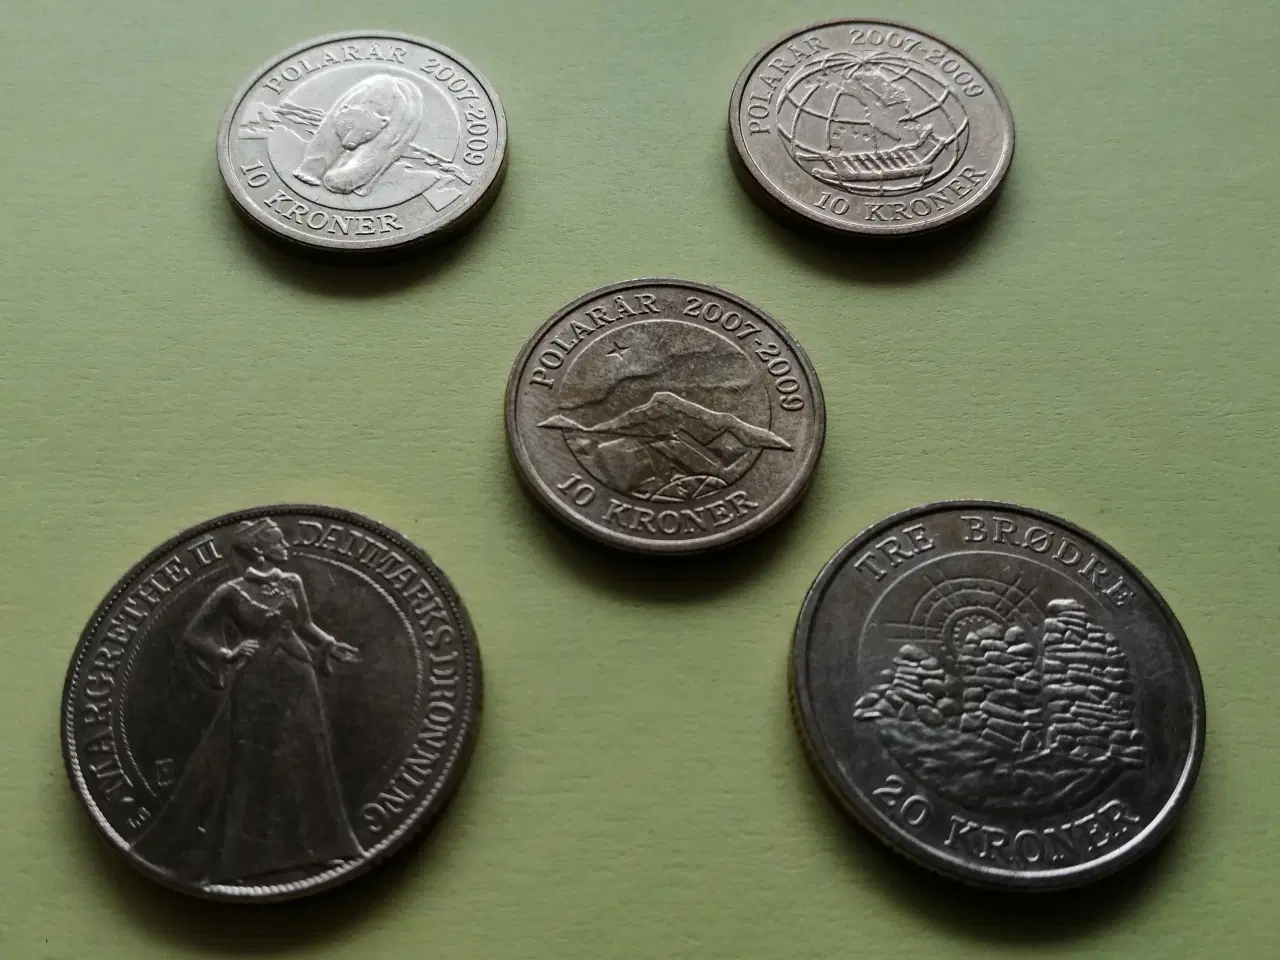 Billede 4 - Danske mønter og 10 kr. seddel